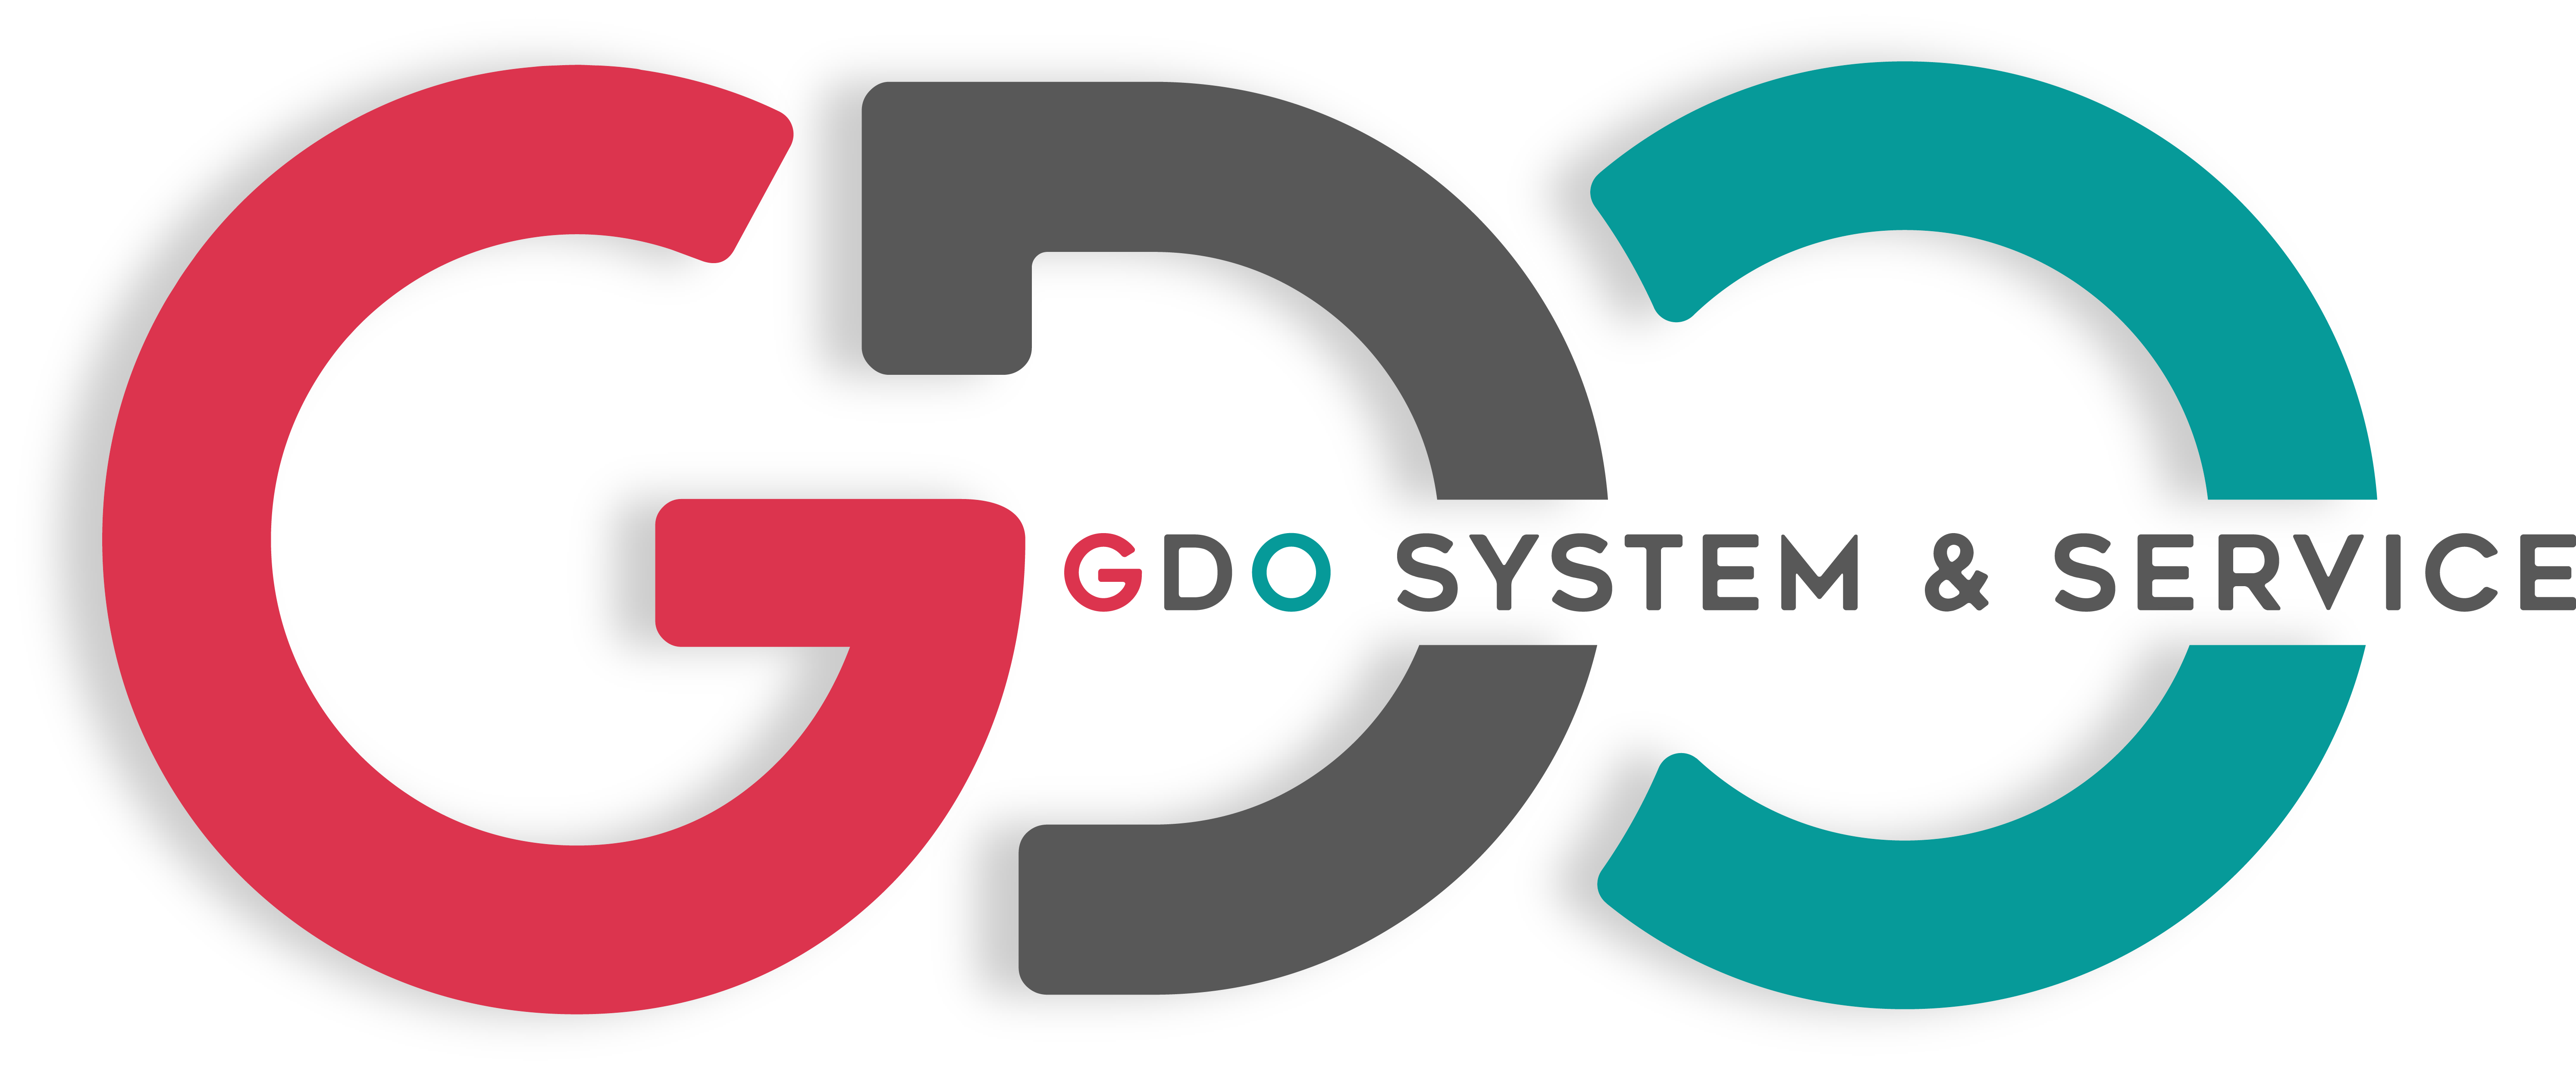 GDO System & Service